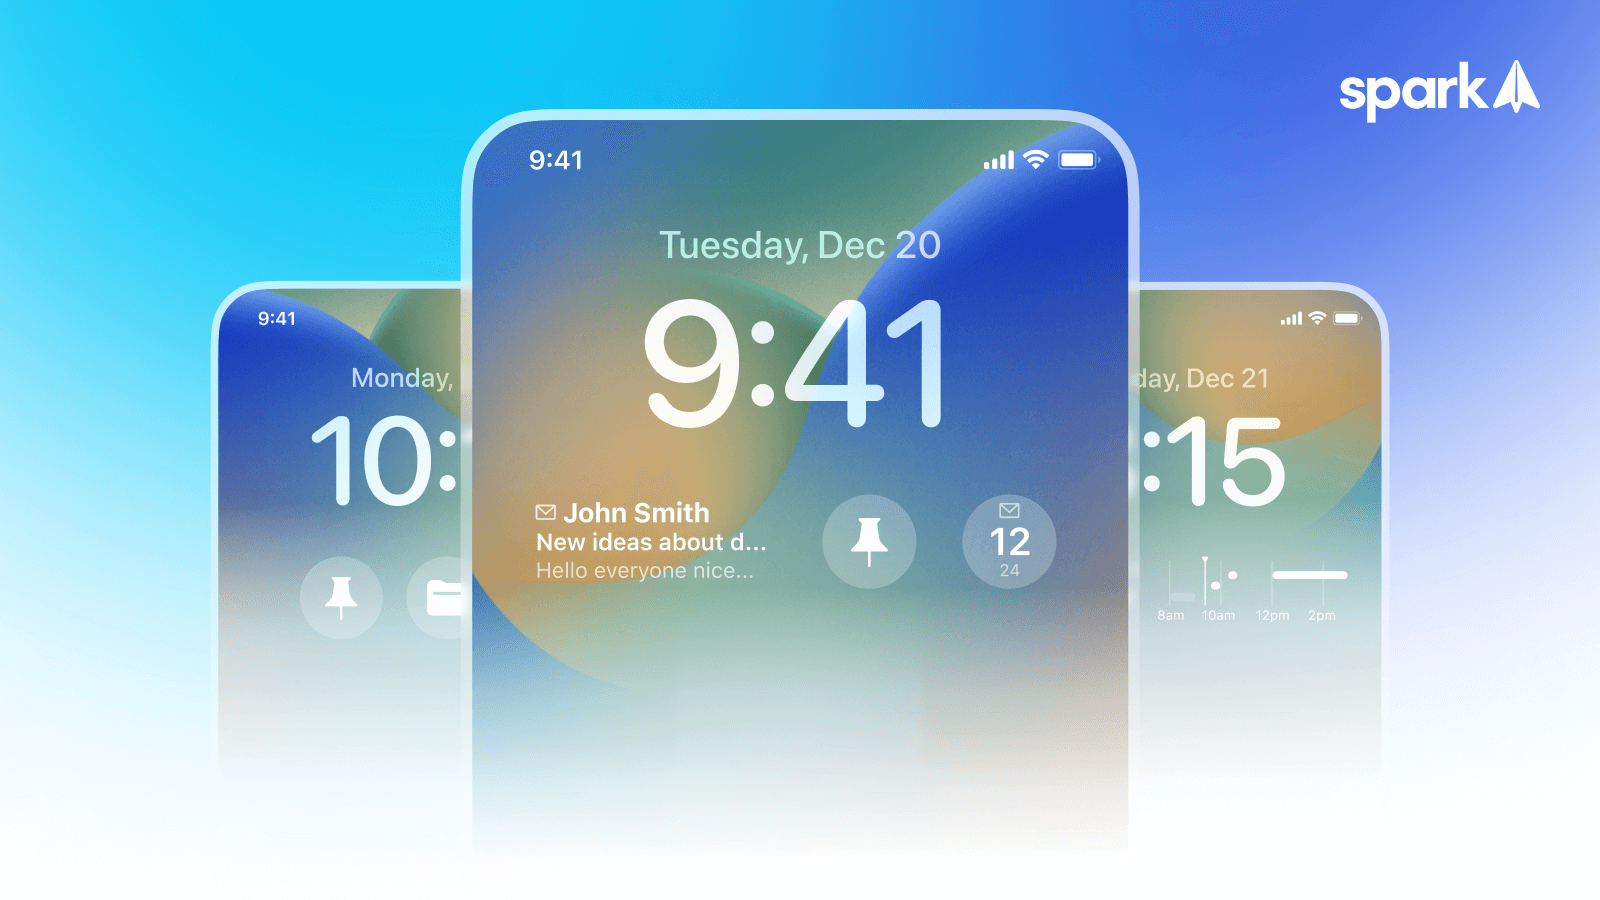 Spark iOS: Lock Screen widgets & Stage Manager - Cập nhật Spark iOS: Tiện ích Khóa màn hình & Quản lý màn hình: Bạn đã từng muốn có thể tùy chỉnh màn hình khóa của mình theo cách riêng của mình? Với Spark iOS, bạn có thể làm điều đó và nhiều hơn nữa! Tính năng Khóa màn hình & Quản lý màn hình sẽ đưa cho bạn sức mạnh tùy chỉnh và sáng tạo để biến chiếc iPhone của bạn thành một thiết bị độc đáo và thật chất riêng của mình.